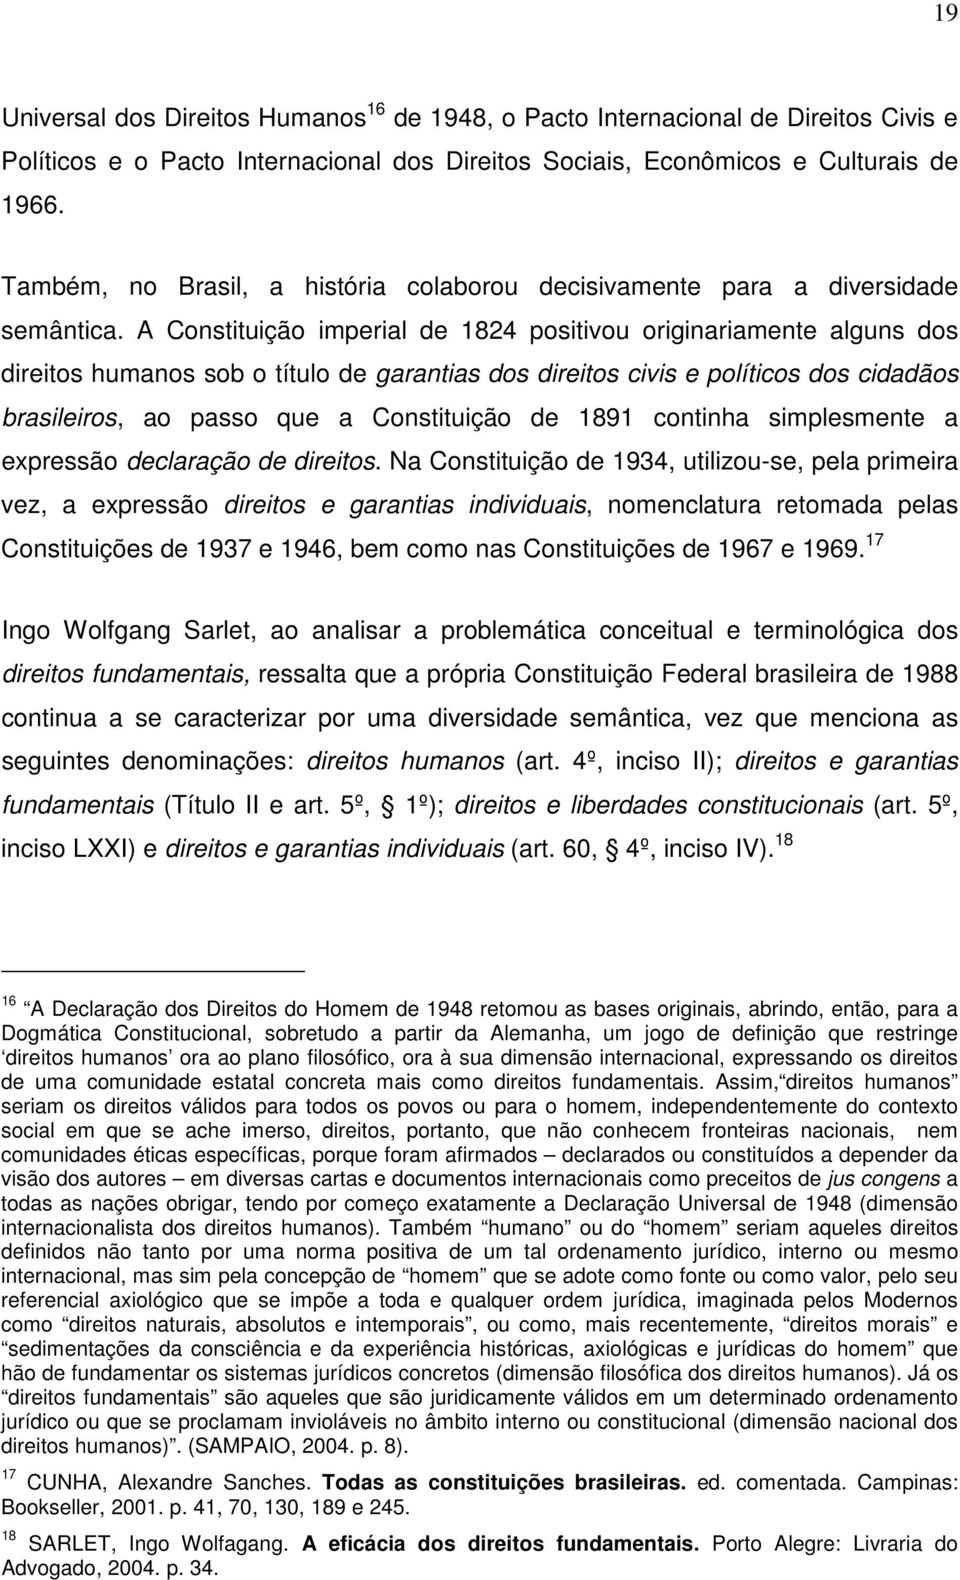 A Constituição imperial de 1824 positivou originariamente alguns dos direitos humanos sob o título de garantias dos direitos civis e políticos dos cidadãos brasileiros, ao passo que a Constituição de